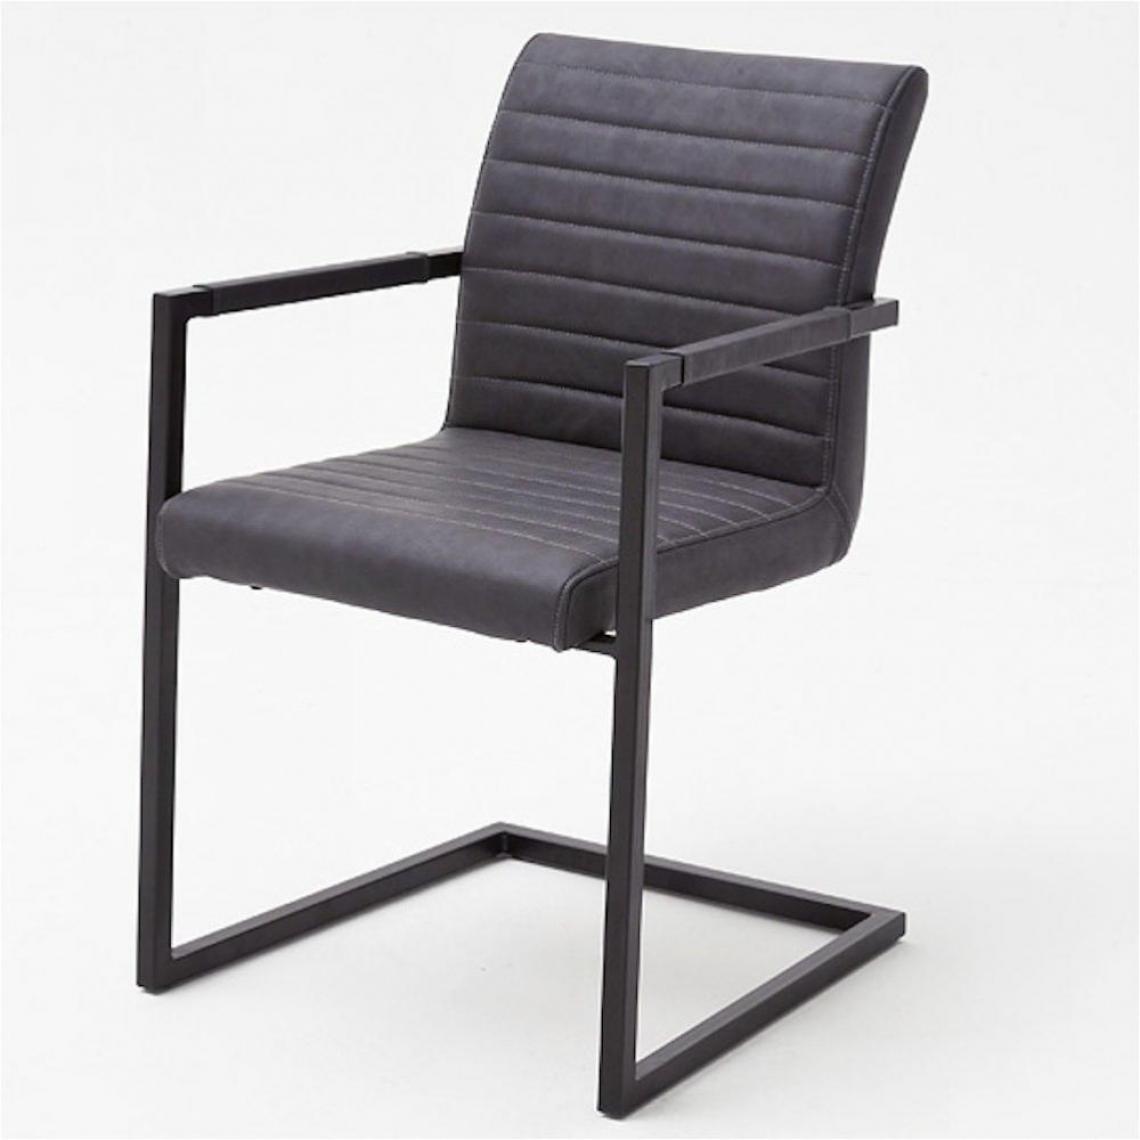 Inside 75 - Lot de 4 chaises KERRY tissu gris couture horizontale avec piètement tube carré métal noir mat avec accoudoirs - Chaises